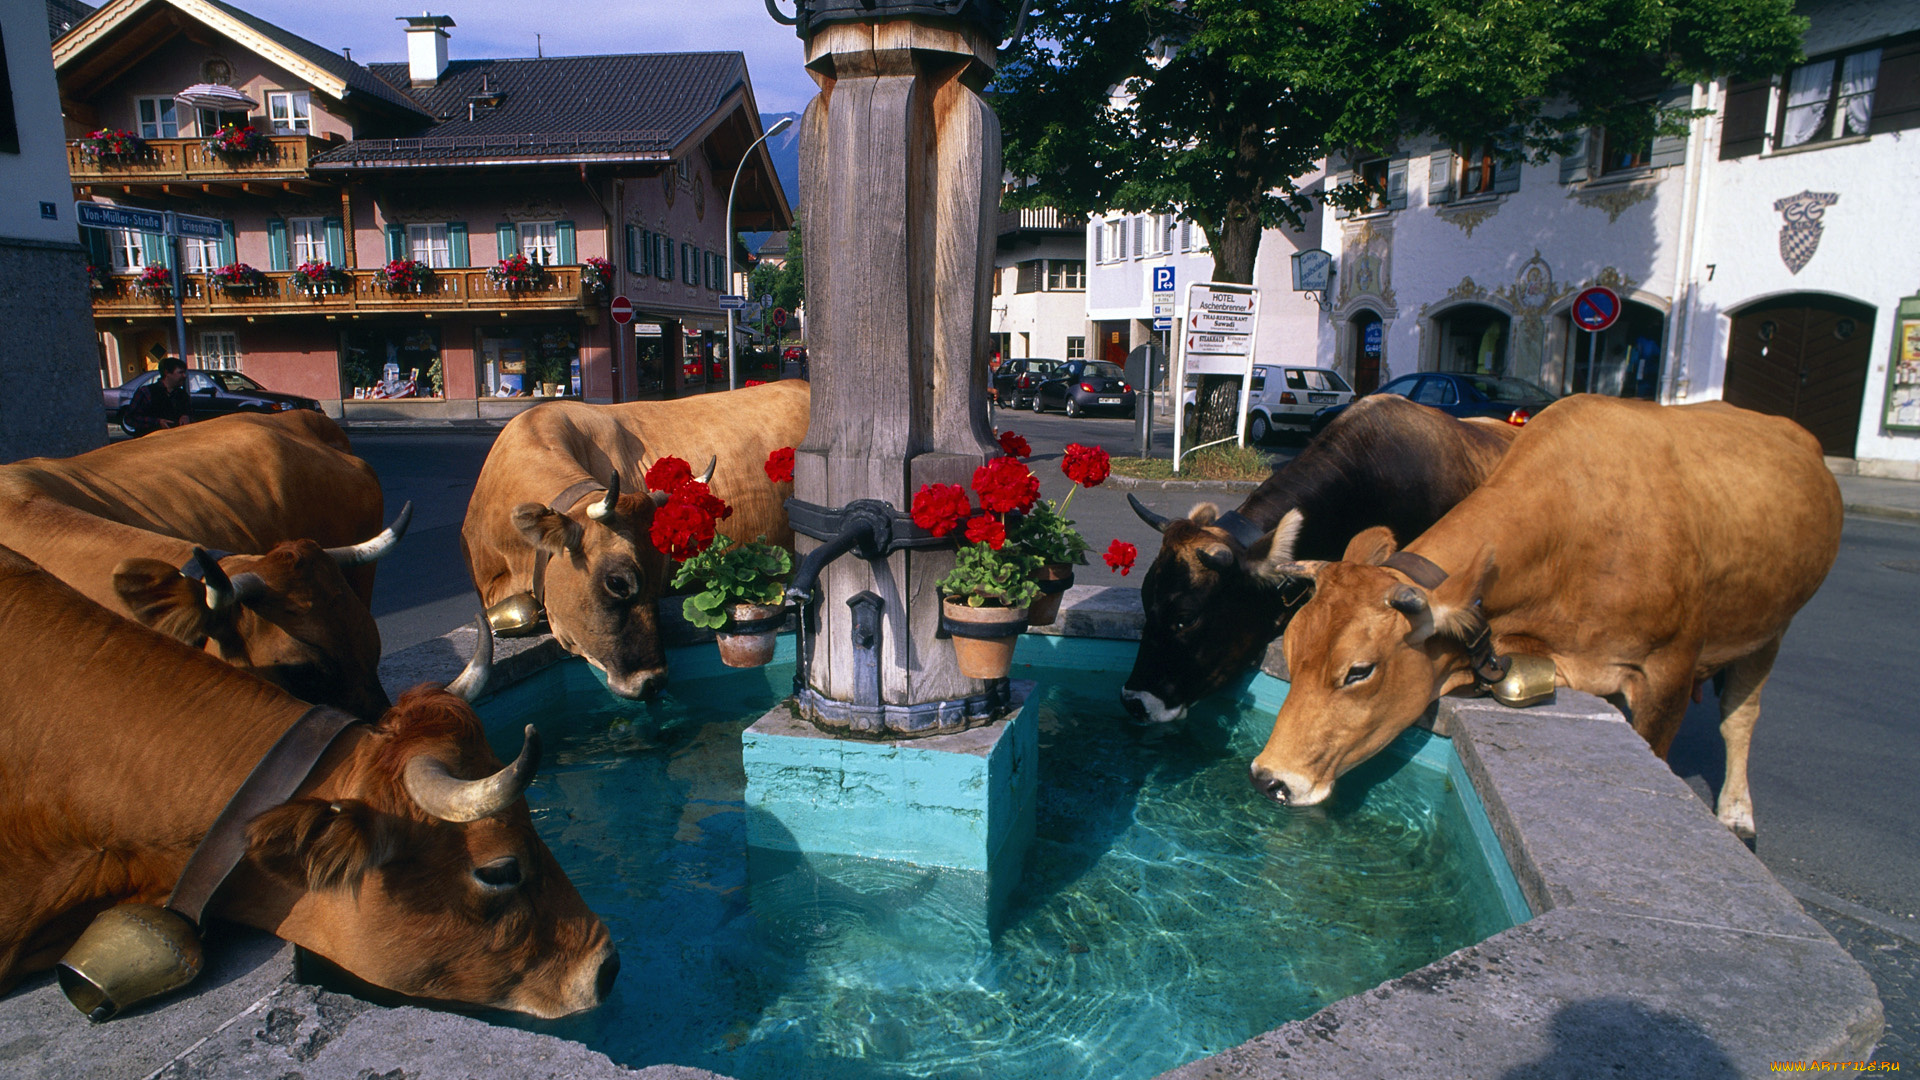 животные, коровы, буйволы, фонтан, город